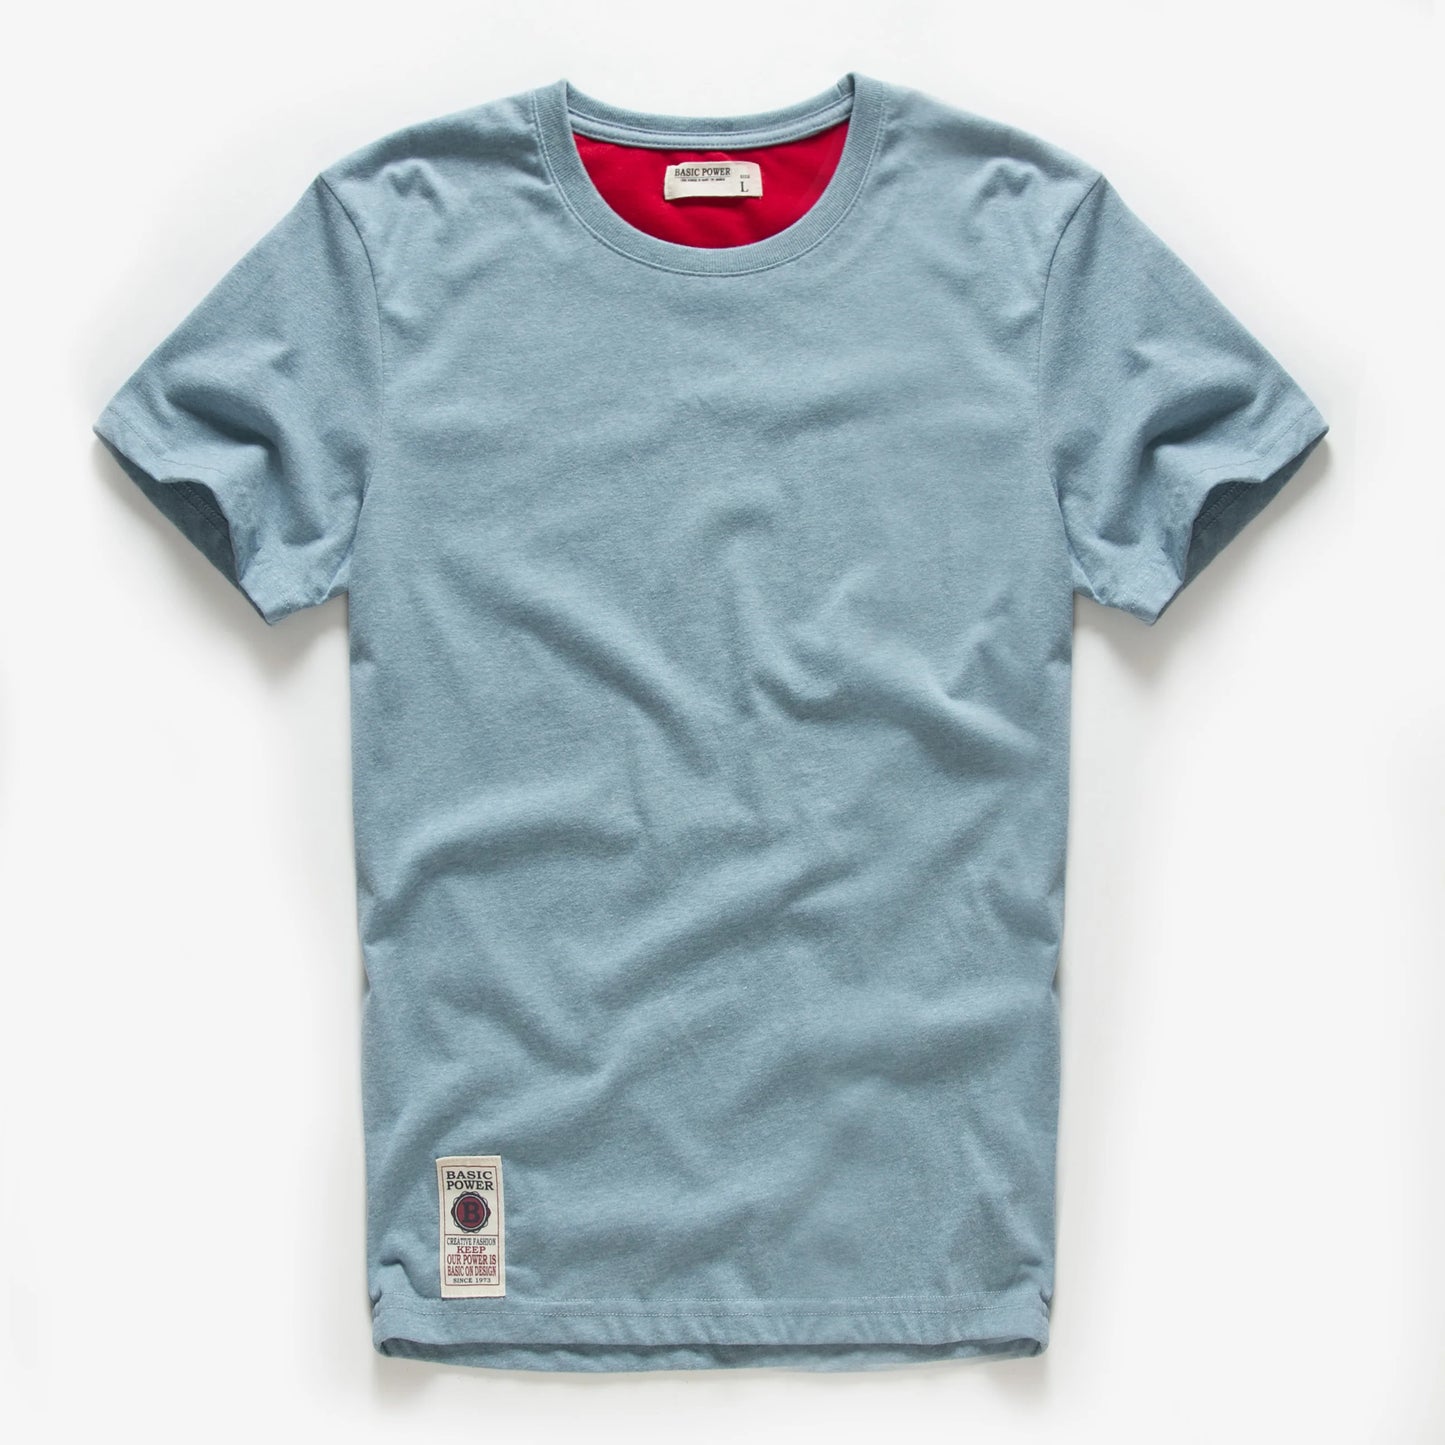 Men's T-shirt Cotton Solid Color